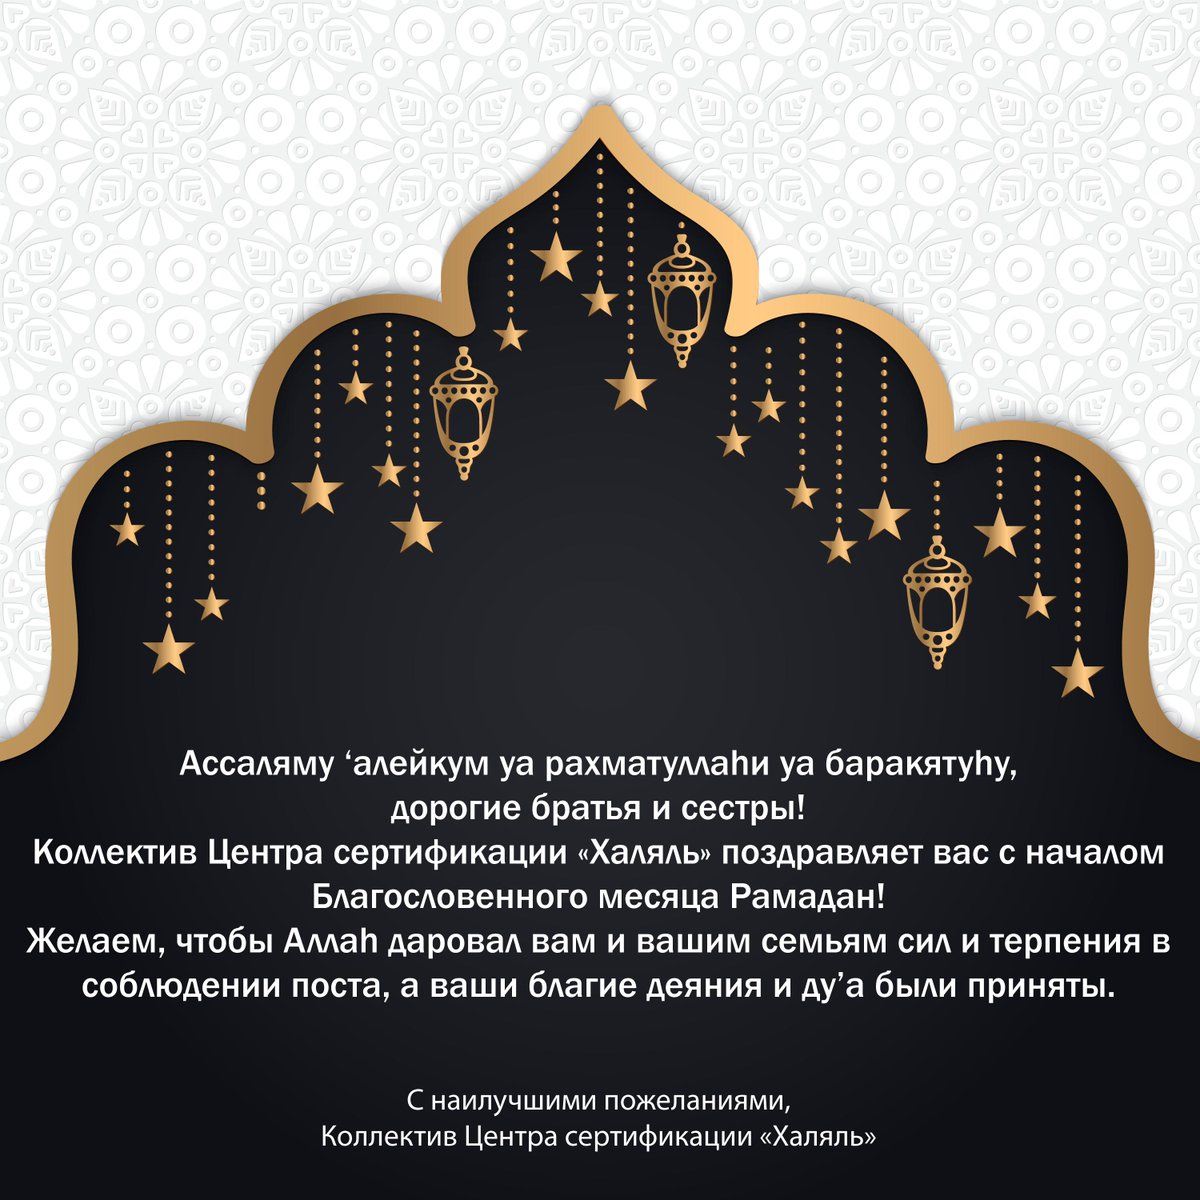 Поздравление с рамаданом на чеченском. Поздравление с Рамаданом. Пожелания на Рамадан. Открытки на Рамадан с пожеланиями. Поздравляю с началом месяца Рамадан.